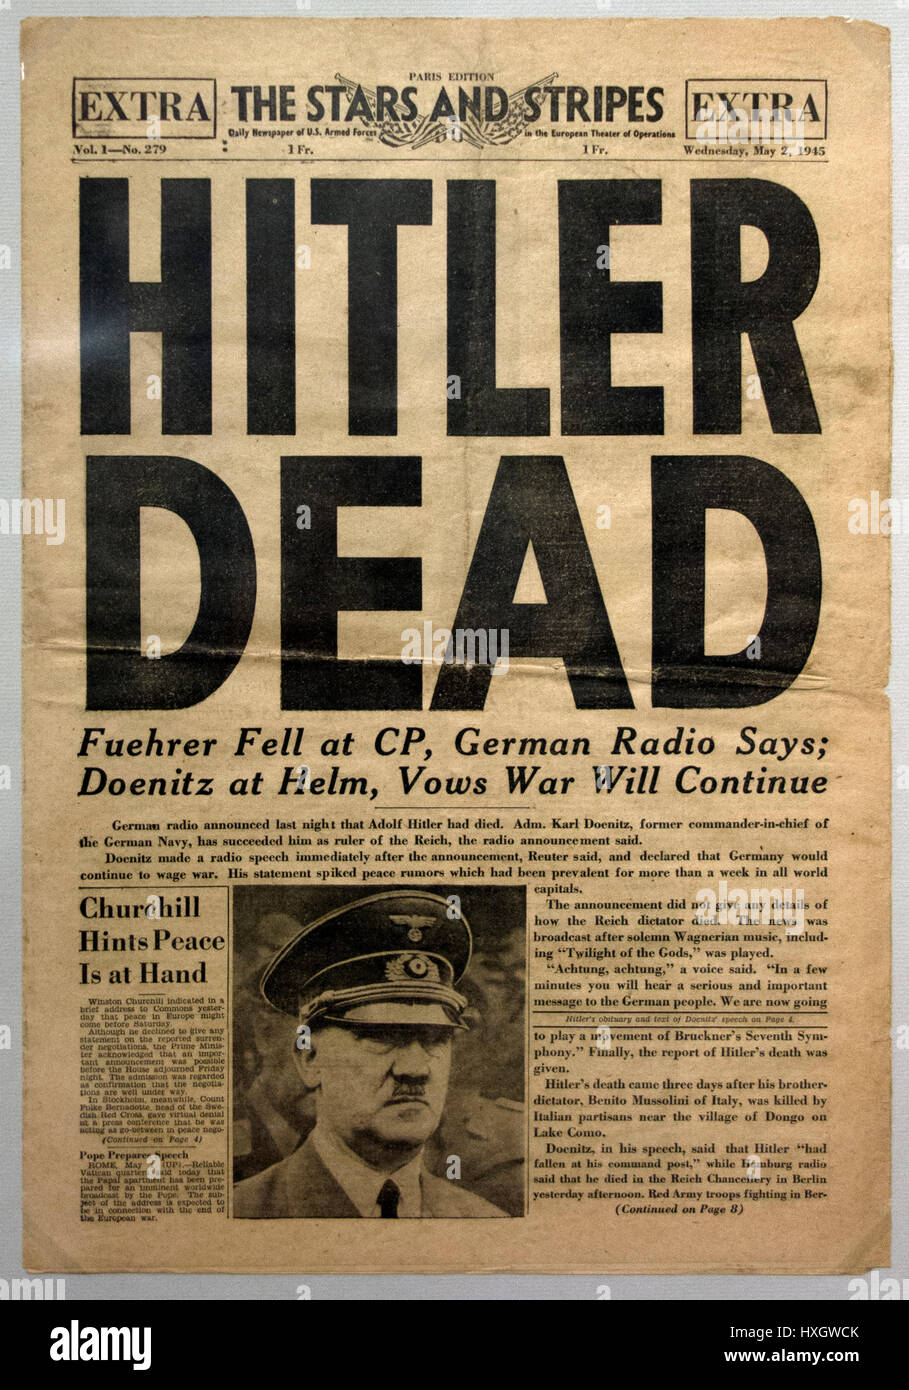 Hitler morti il giornale - Edizione Speciale di soldati USA' il giornale a stelle e strisce sulla morte di Adolf Hitler, Paris edition, 2 maggio 1945. Foto Stock